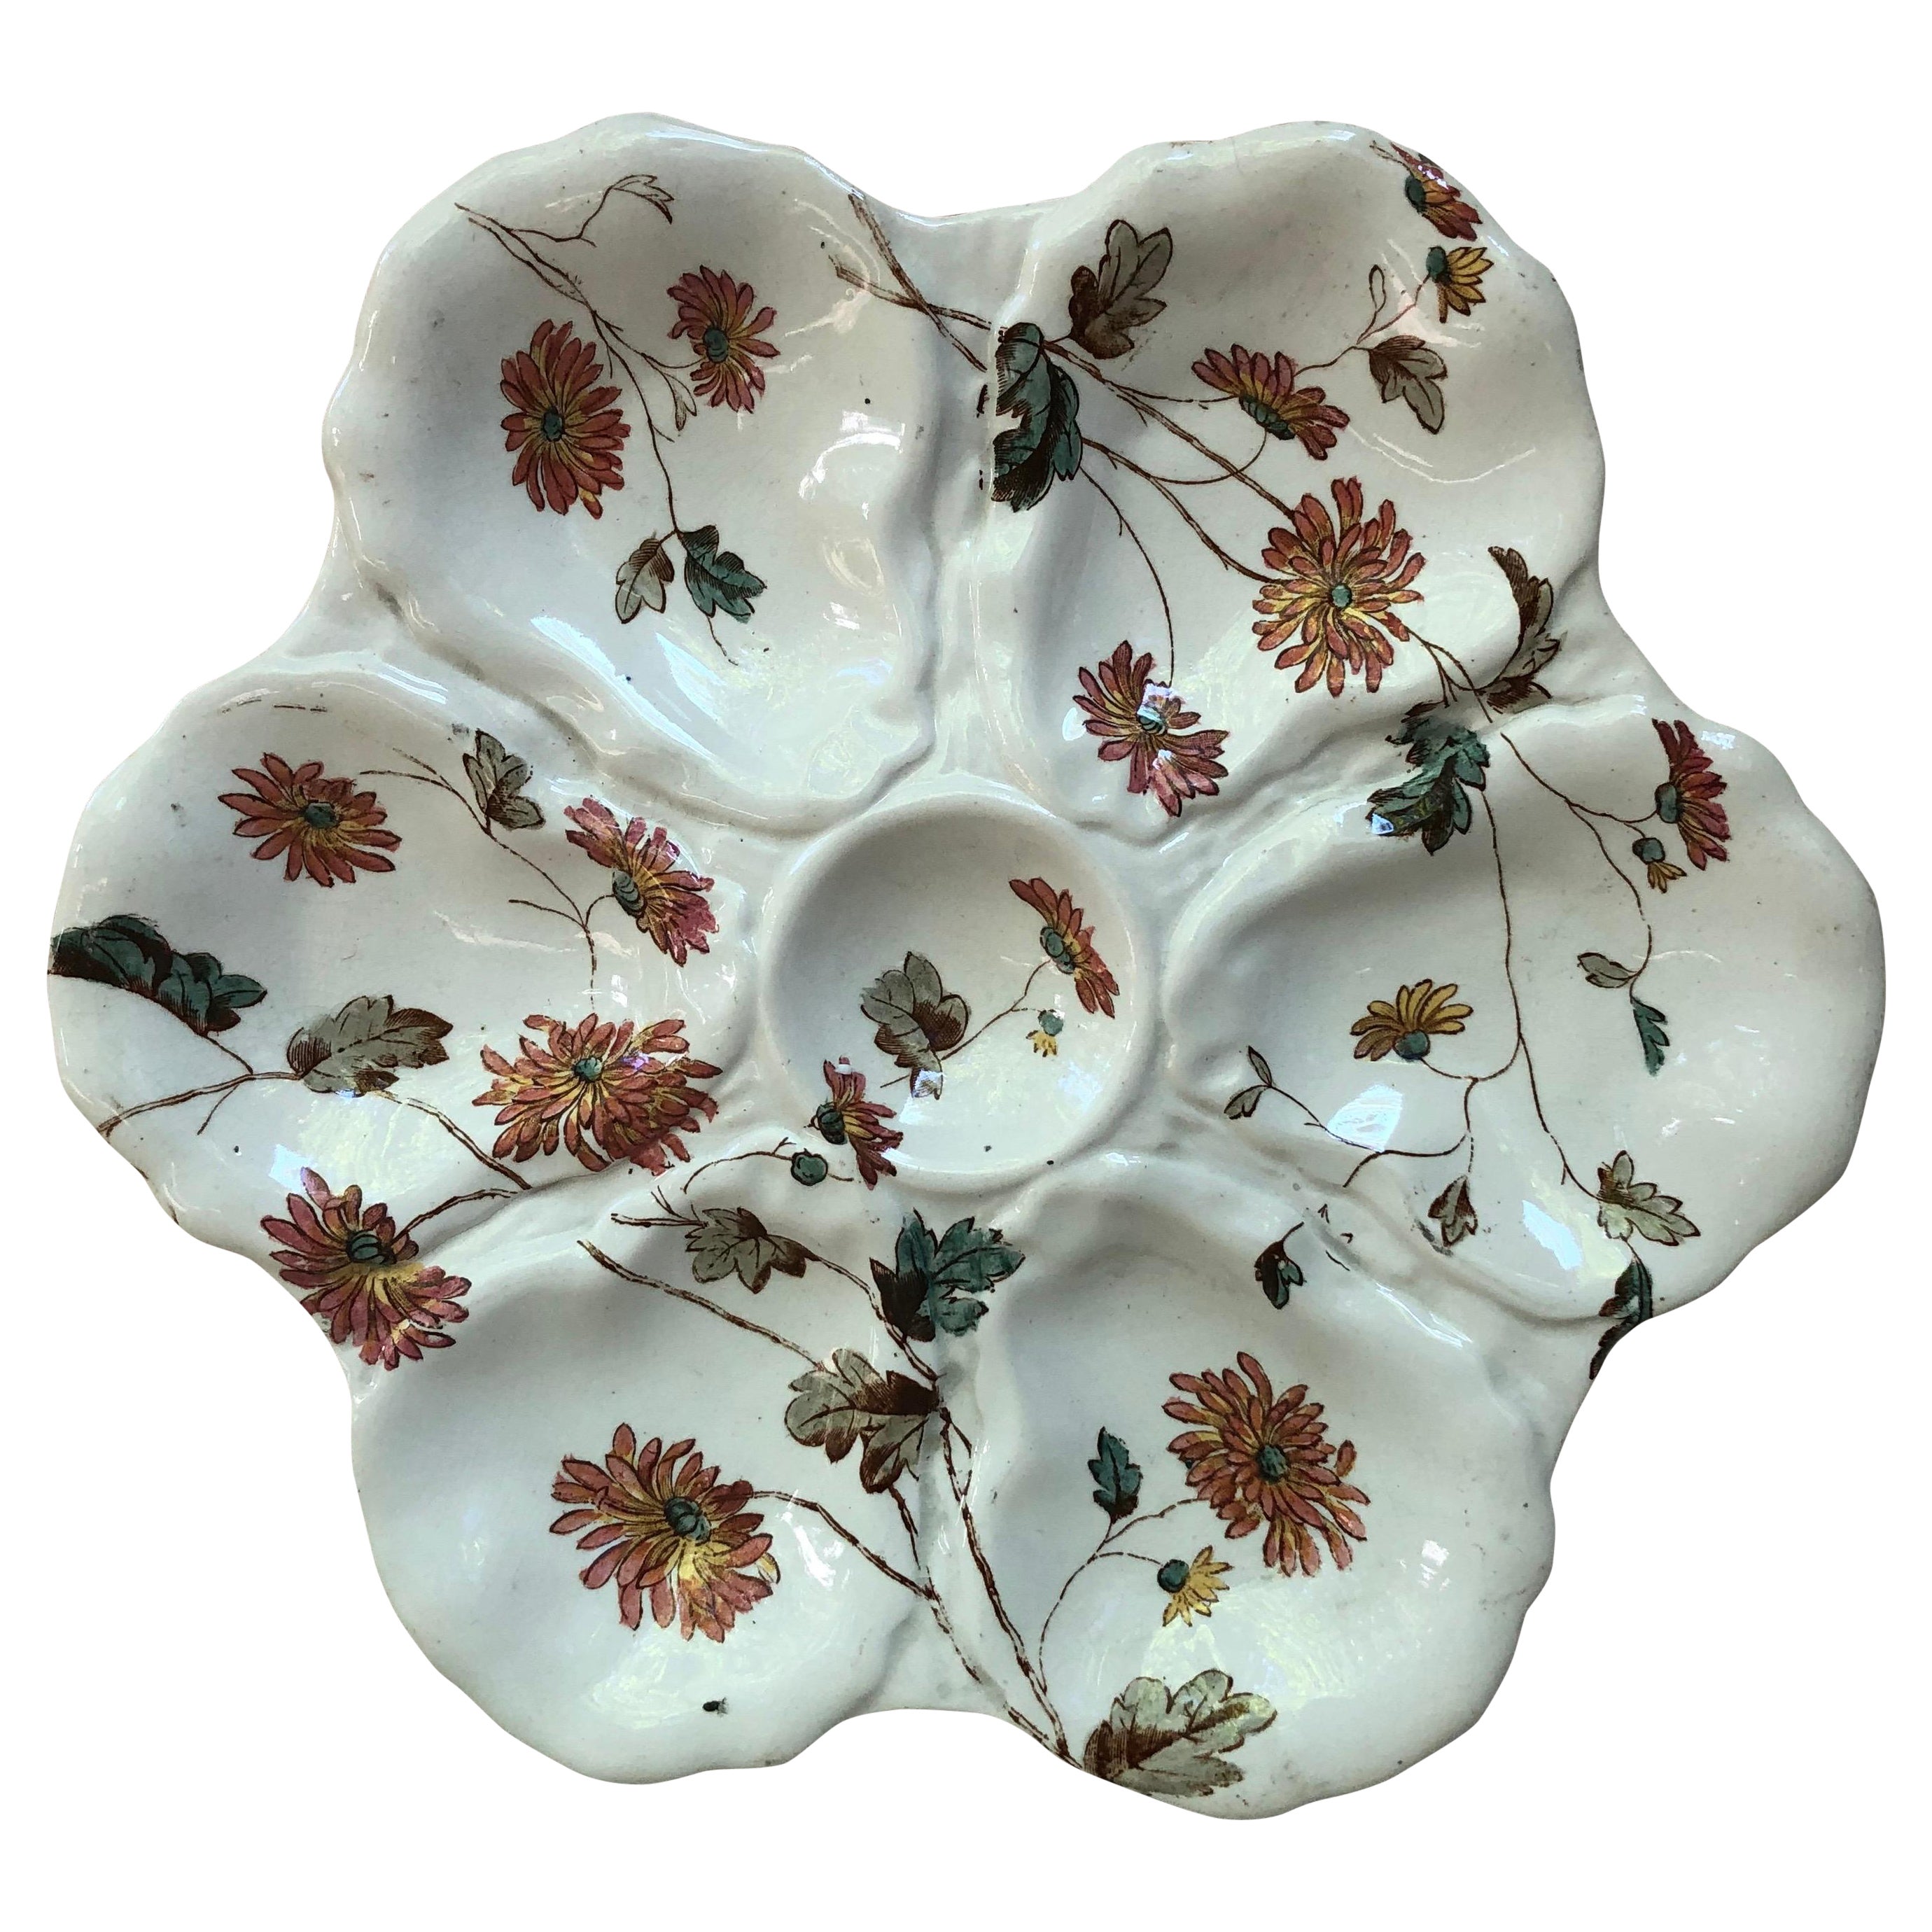 Assiette à huîtres anglaise du 19ème siècle avec fleurs Adderley